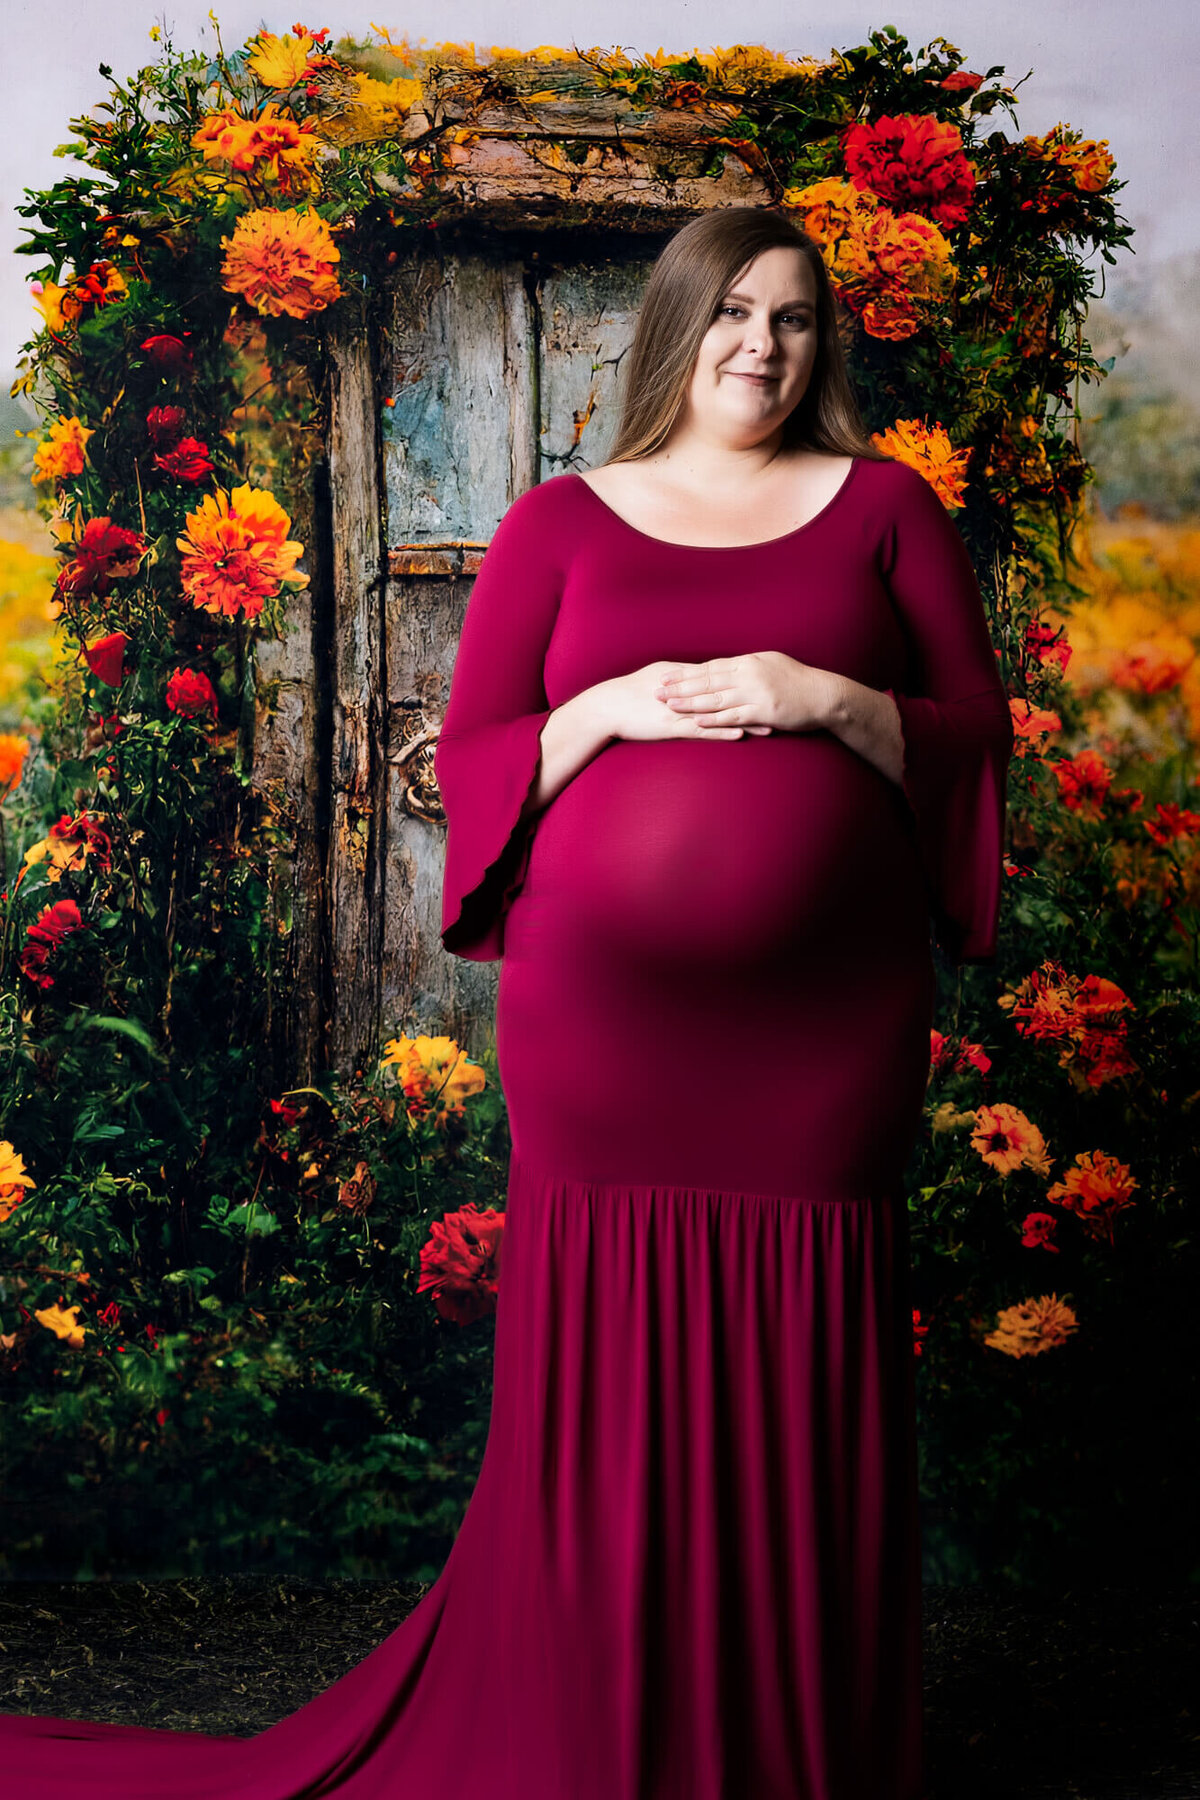 prescott-az-maternity-photographer-126